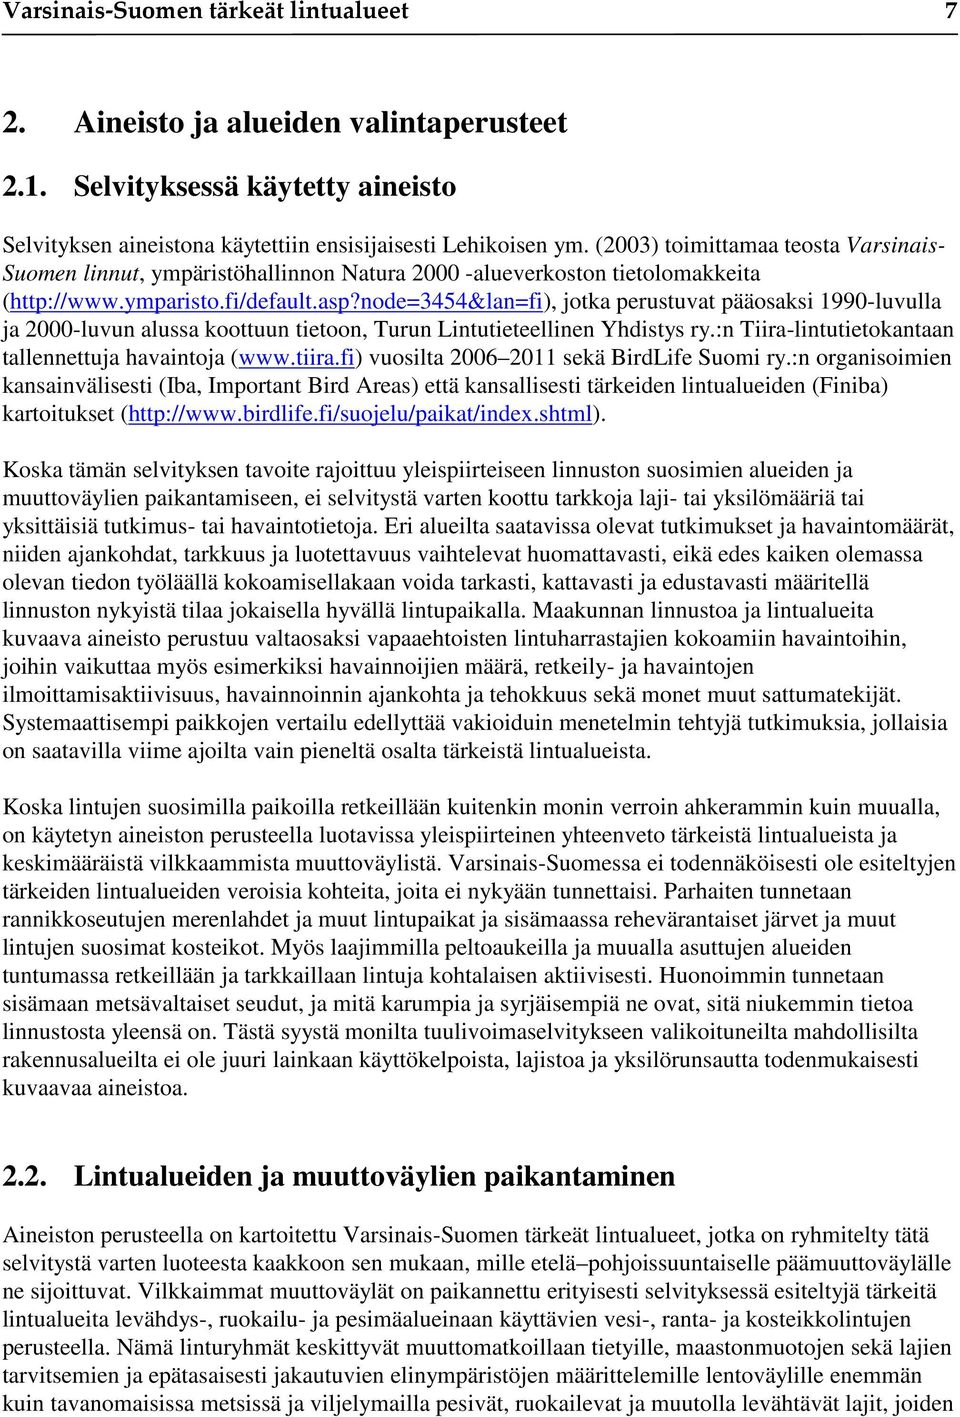 node=3454&lan=fi), jotka perustuvat pääosaksi 1990-luvulla ja 2000-luvun alussa koottuun tietoon, Turun Lintutieteellinen Yhdistys ry.:n Tiira-lintutietokantaan tallennettuja havaintoja (www.tiira.